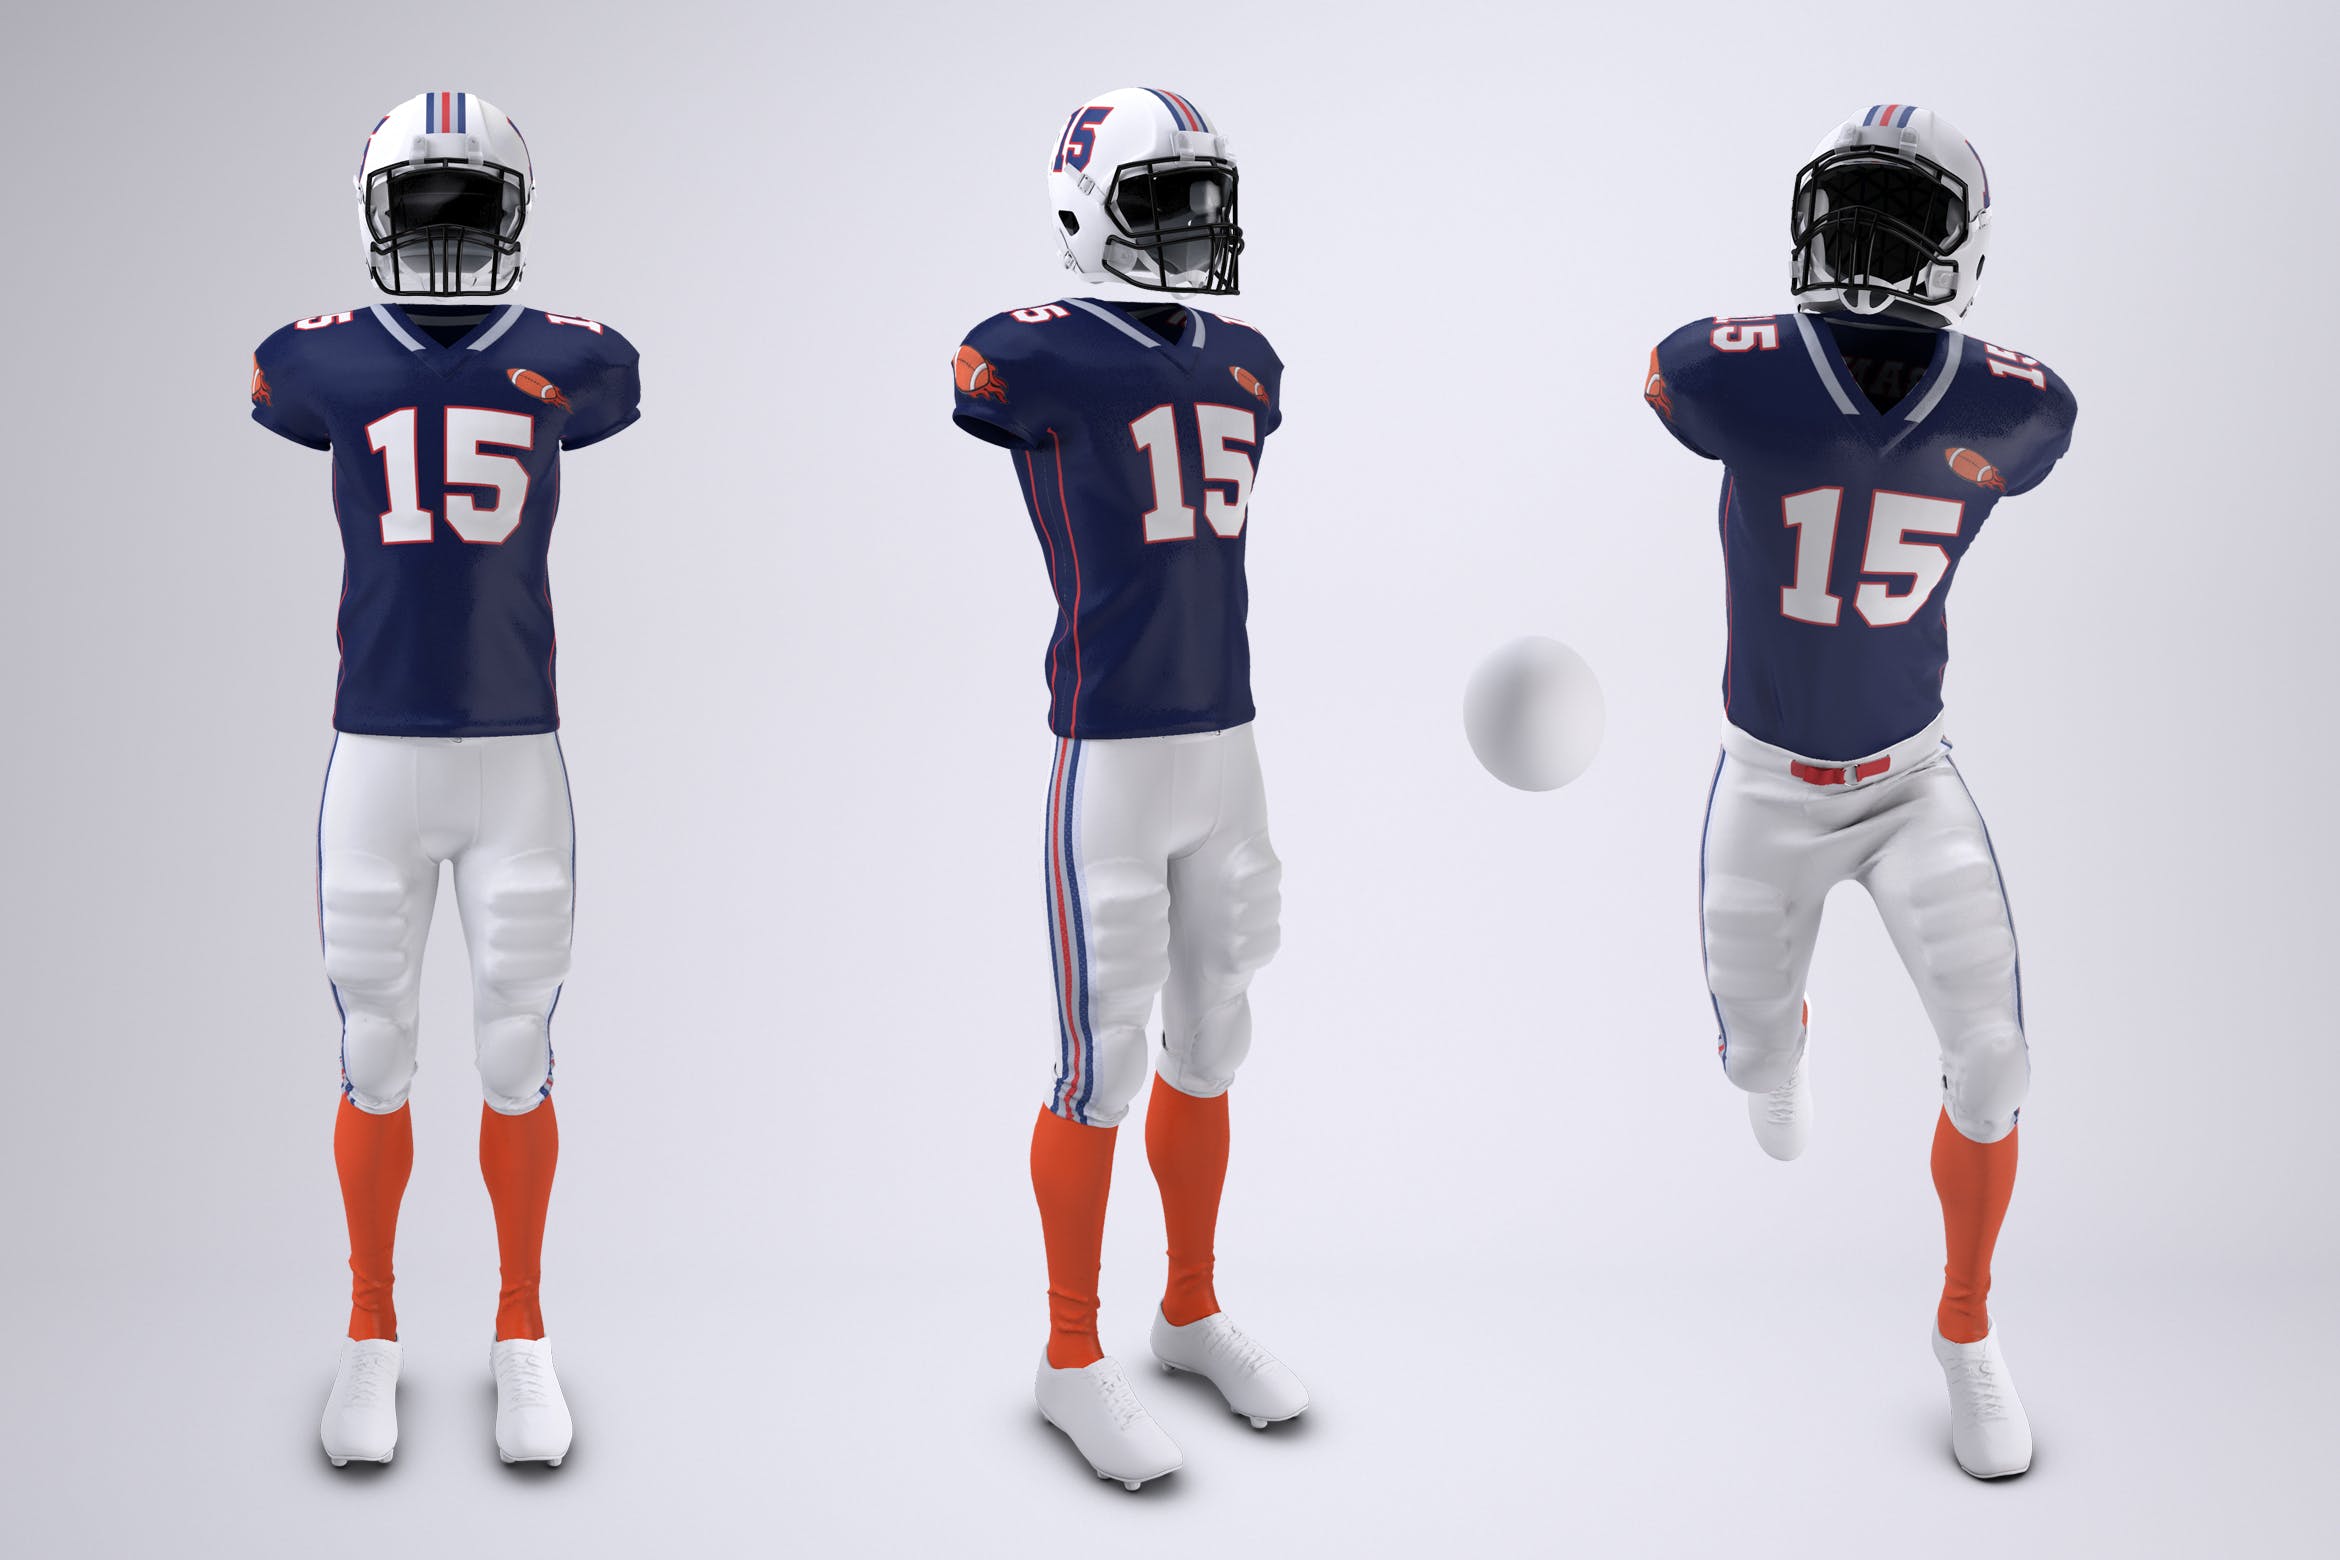 美式足球球服队服设计效果图样机模板 American Football Uniform Mock-Up插图